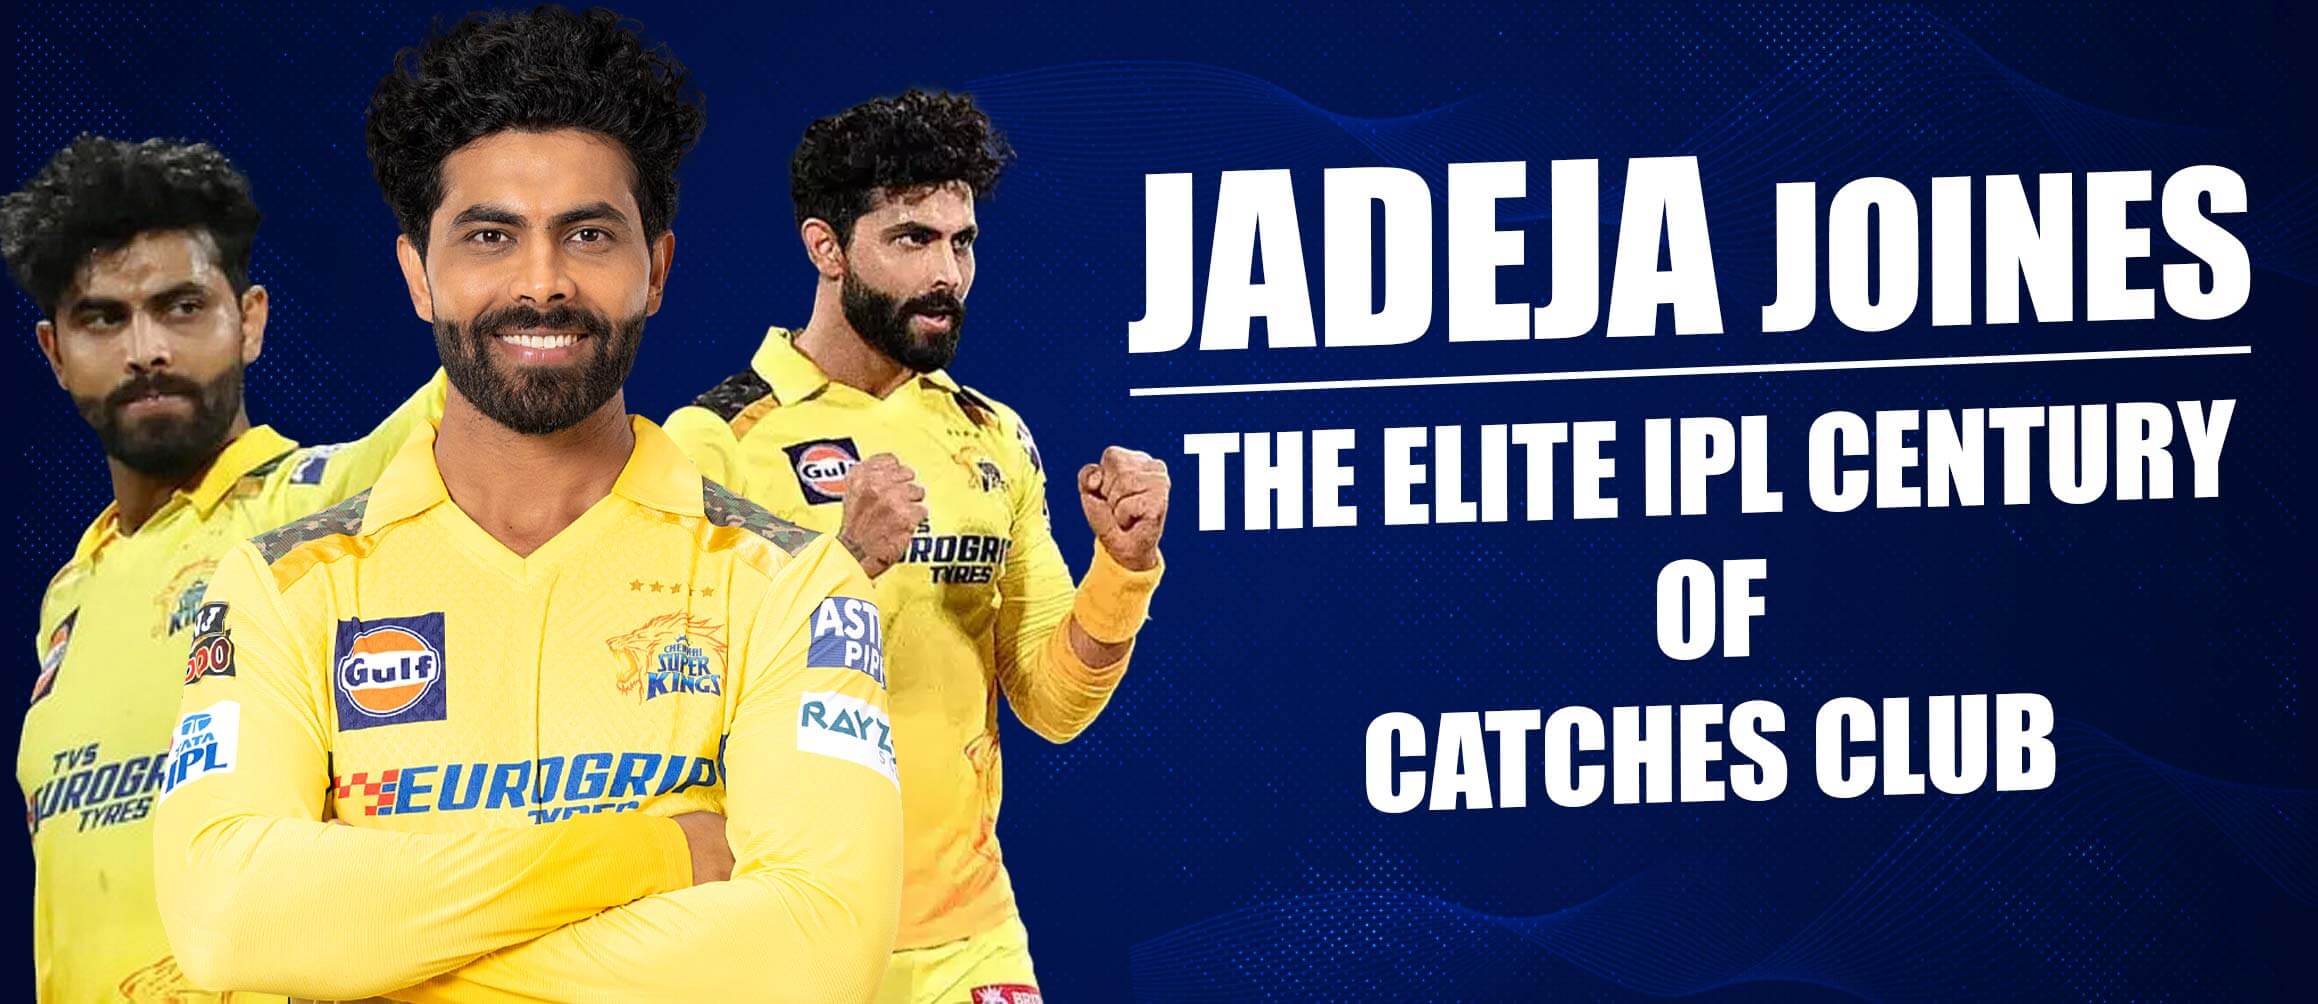 Jadeja Joines The Elite IPL Century Of Catches Club